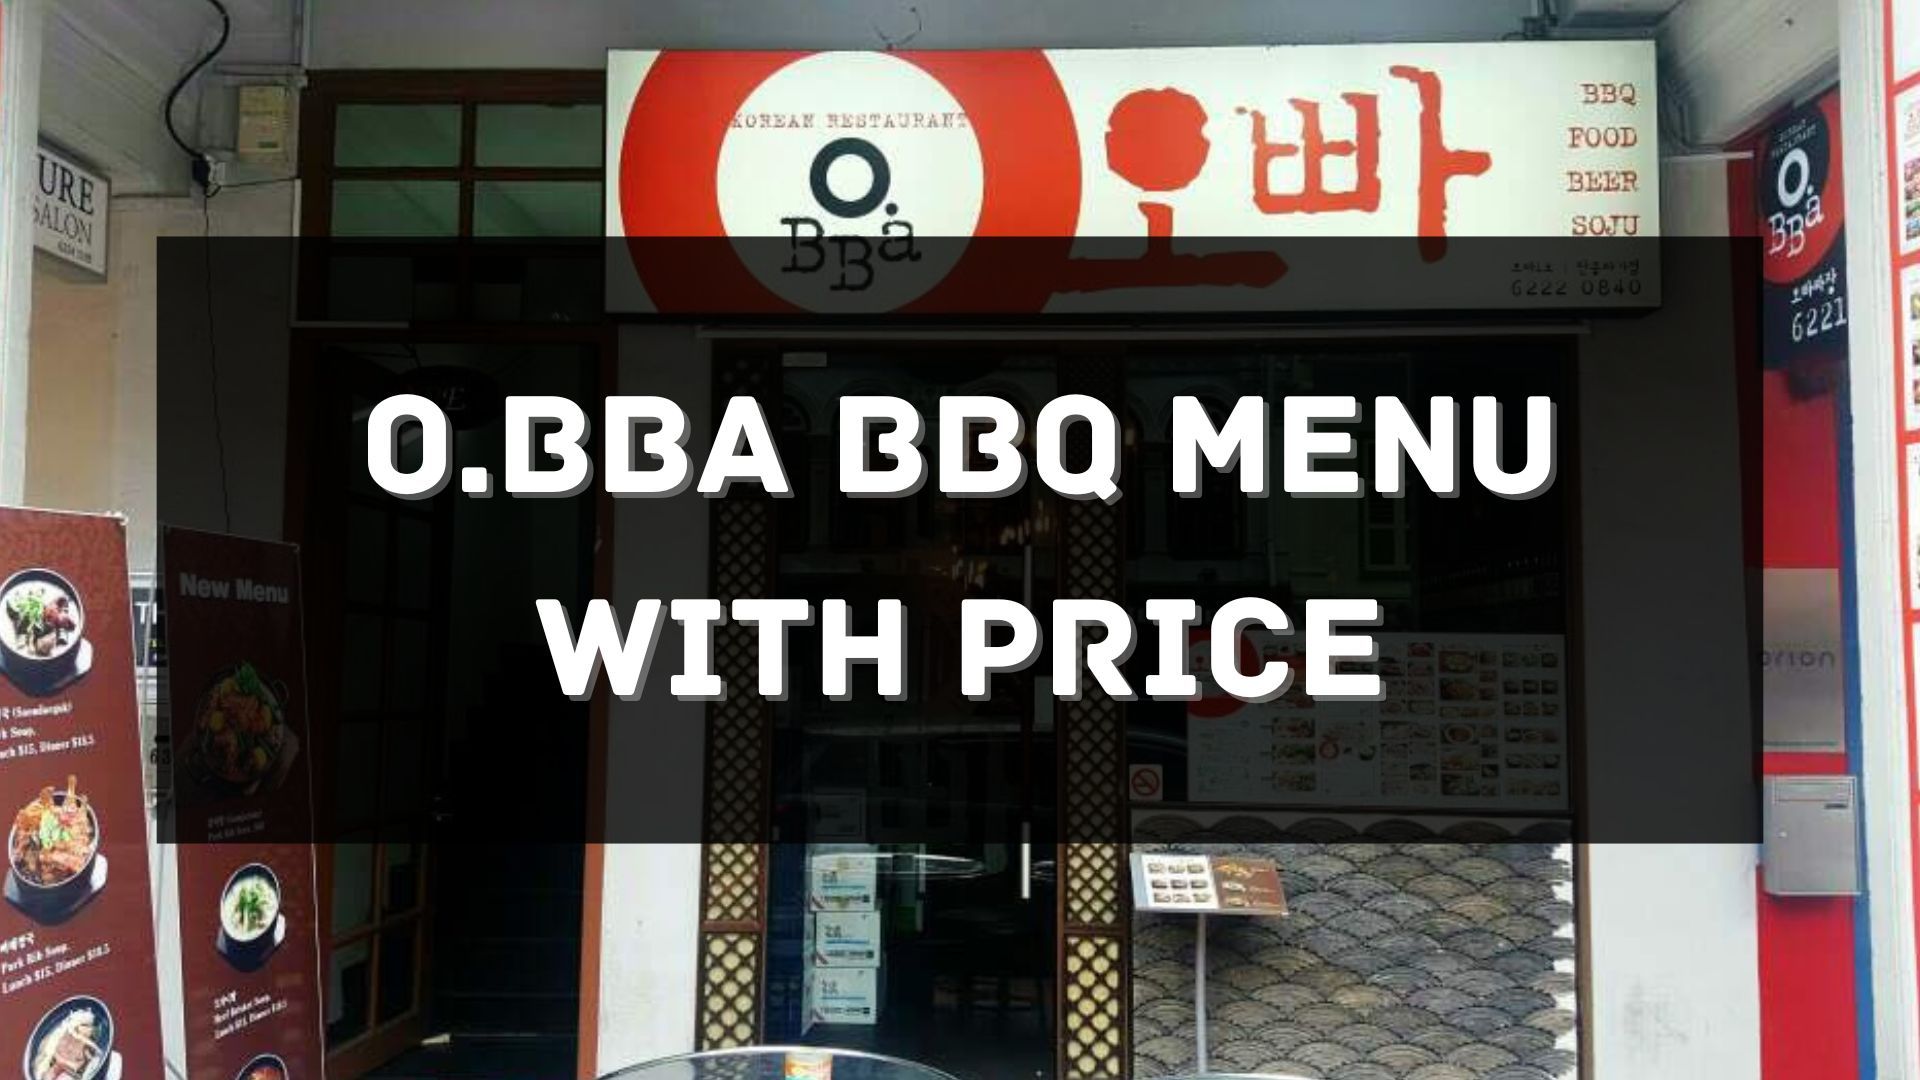 o.bba bbq menu with price singapore